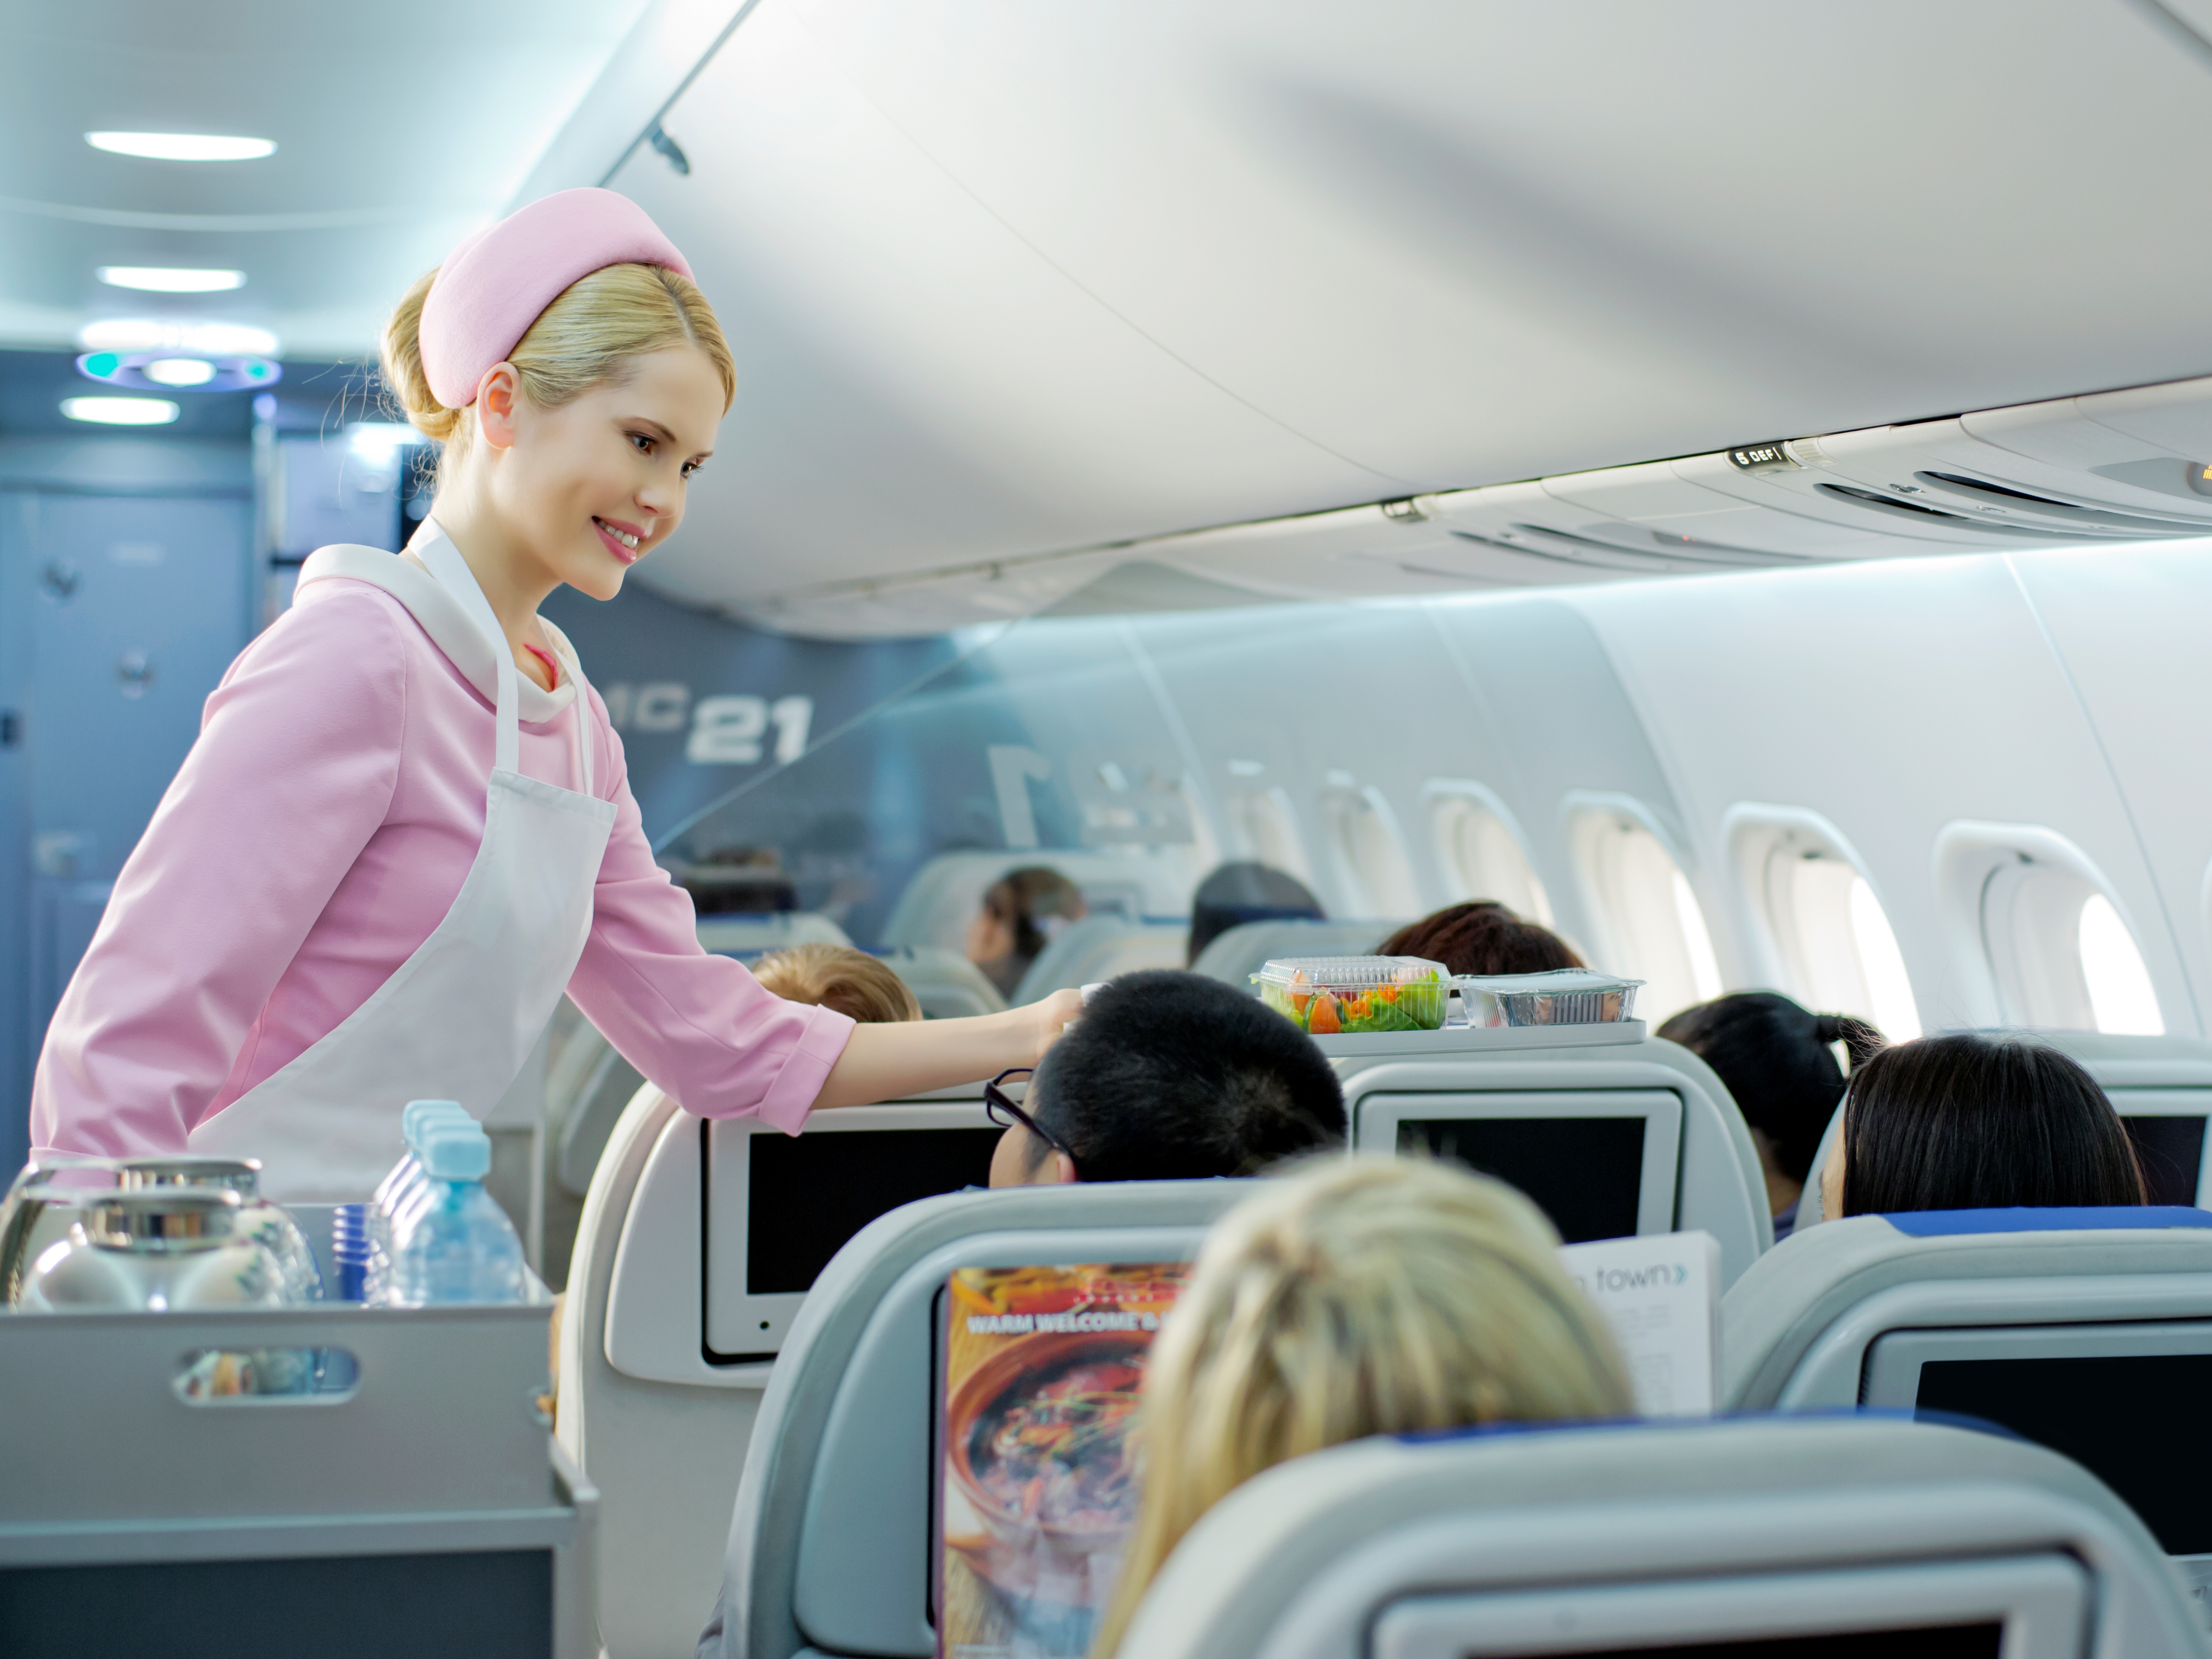 Самые неожиданные сборы лоукостеров: за что платят пассажиры в самолетах